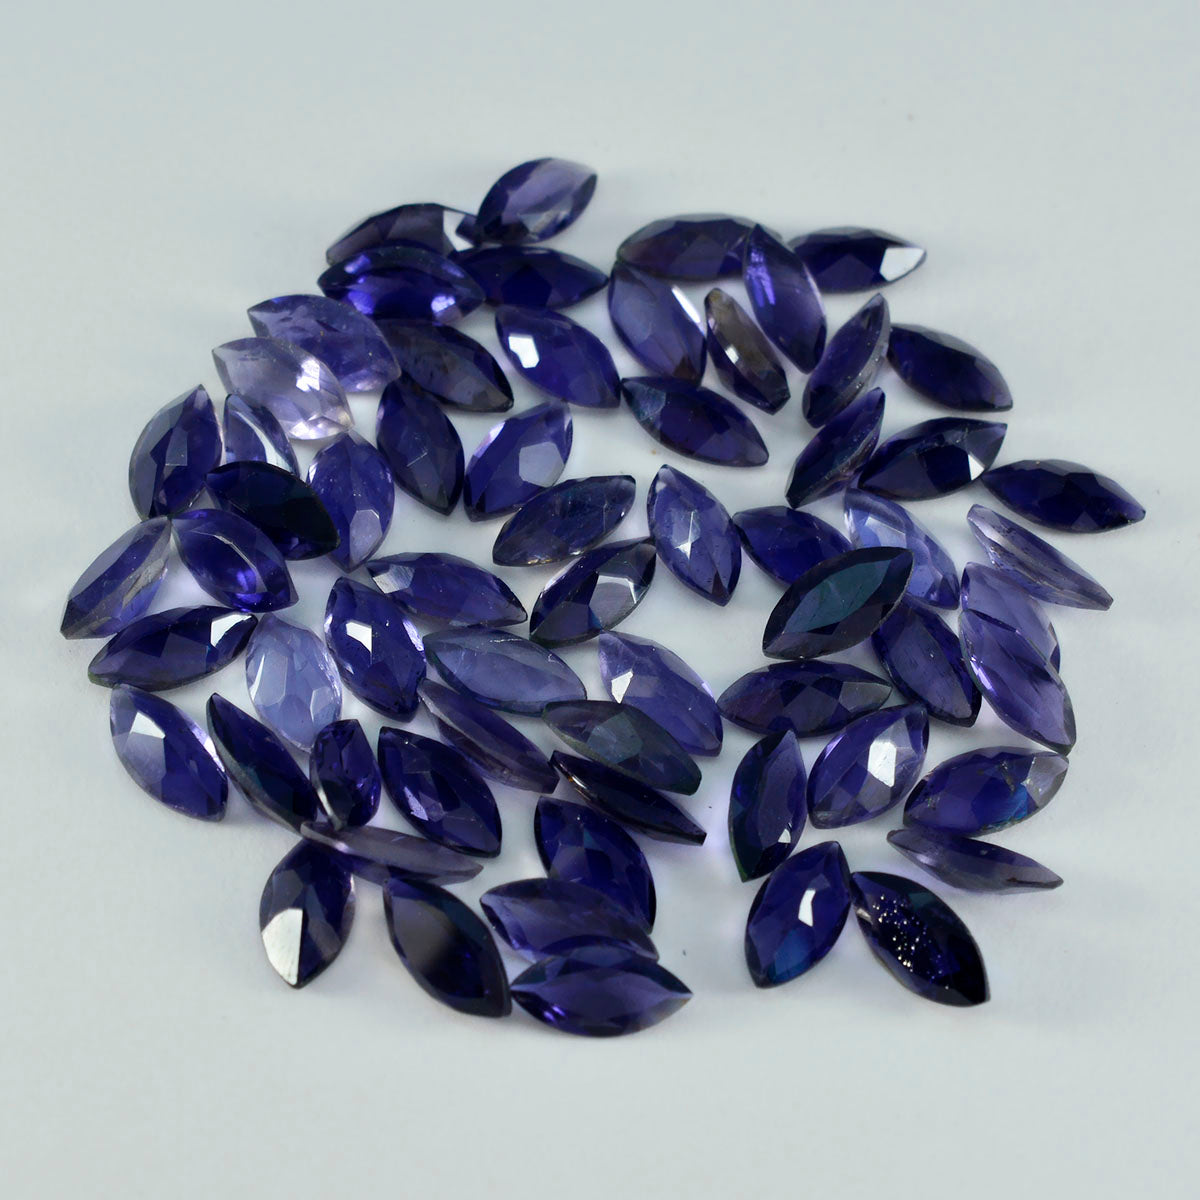 Riyogems 1 pièce d'iolite bleue à facettes 5x10 mm en forme de marquise, pierres précieuses de grande qualité